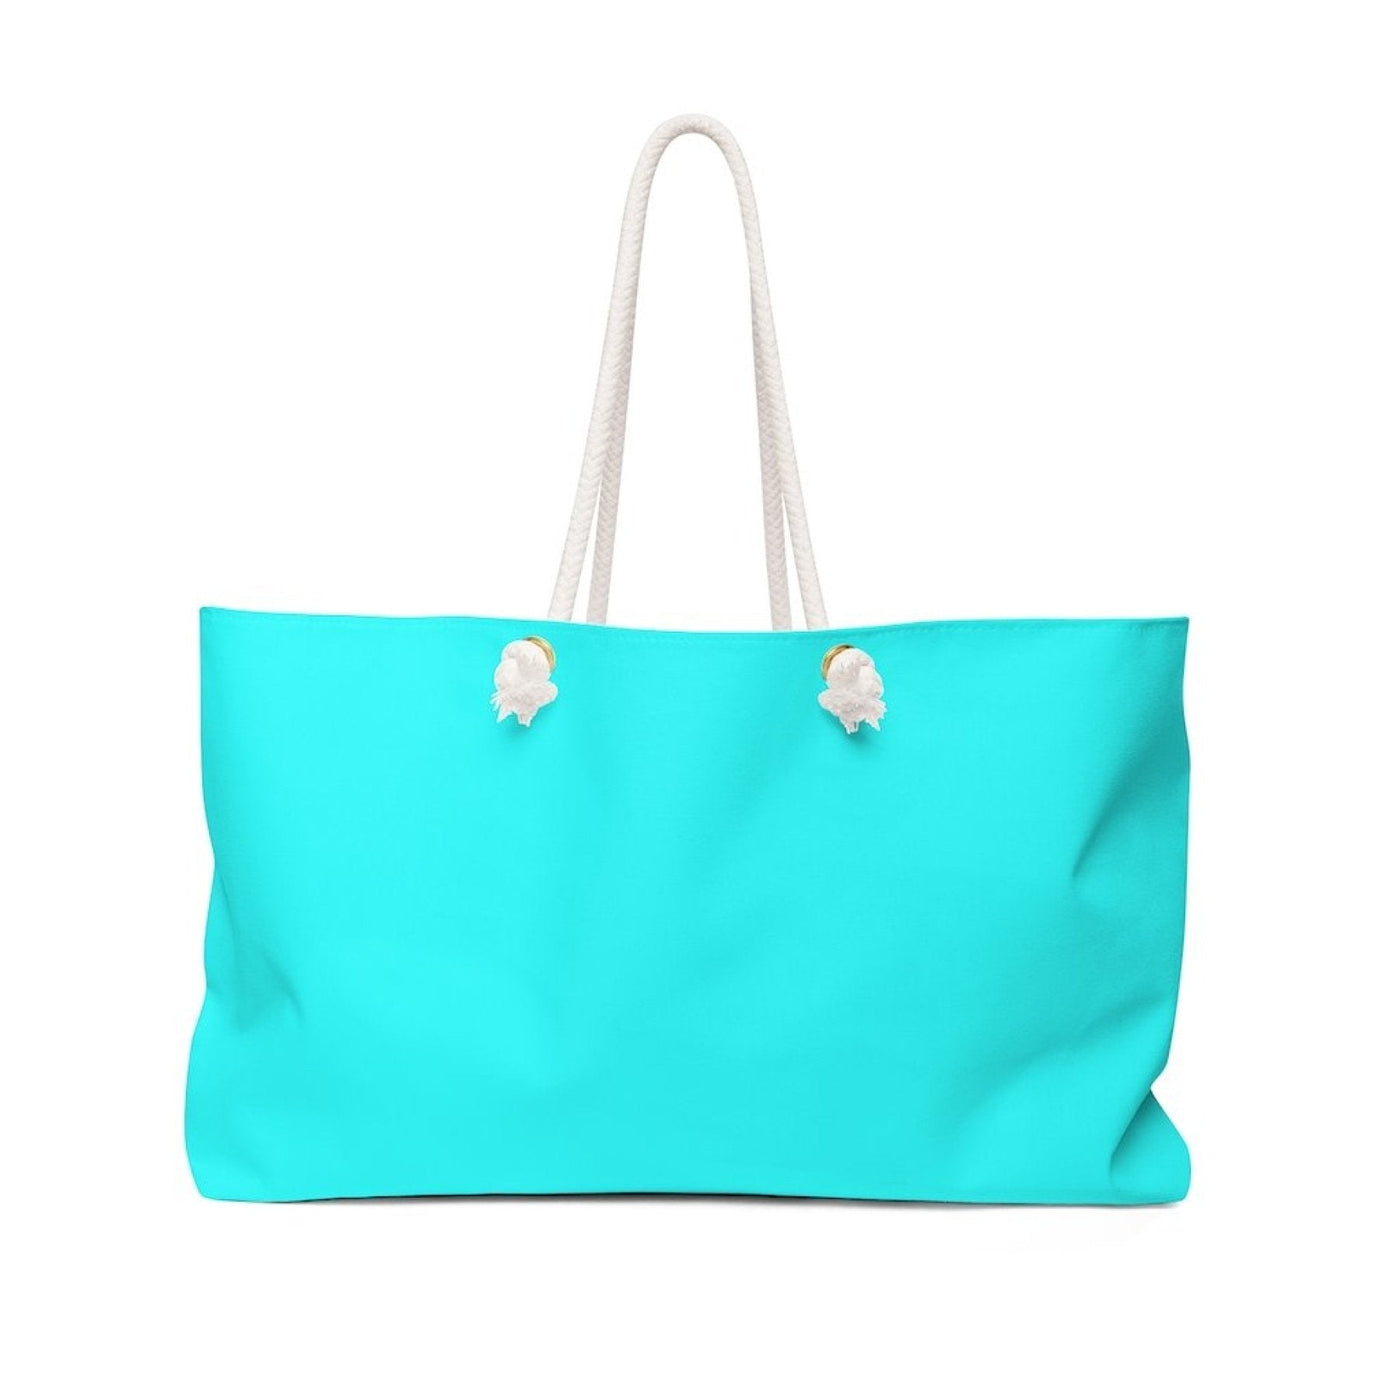 Weekender Tote Bag Cyan Blue - Bags | Tote Bags | Weekender